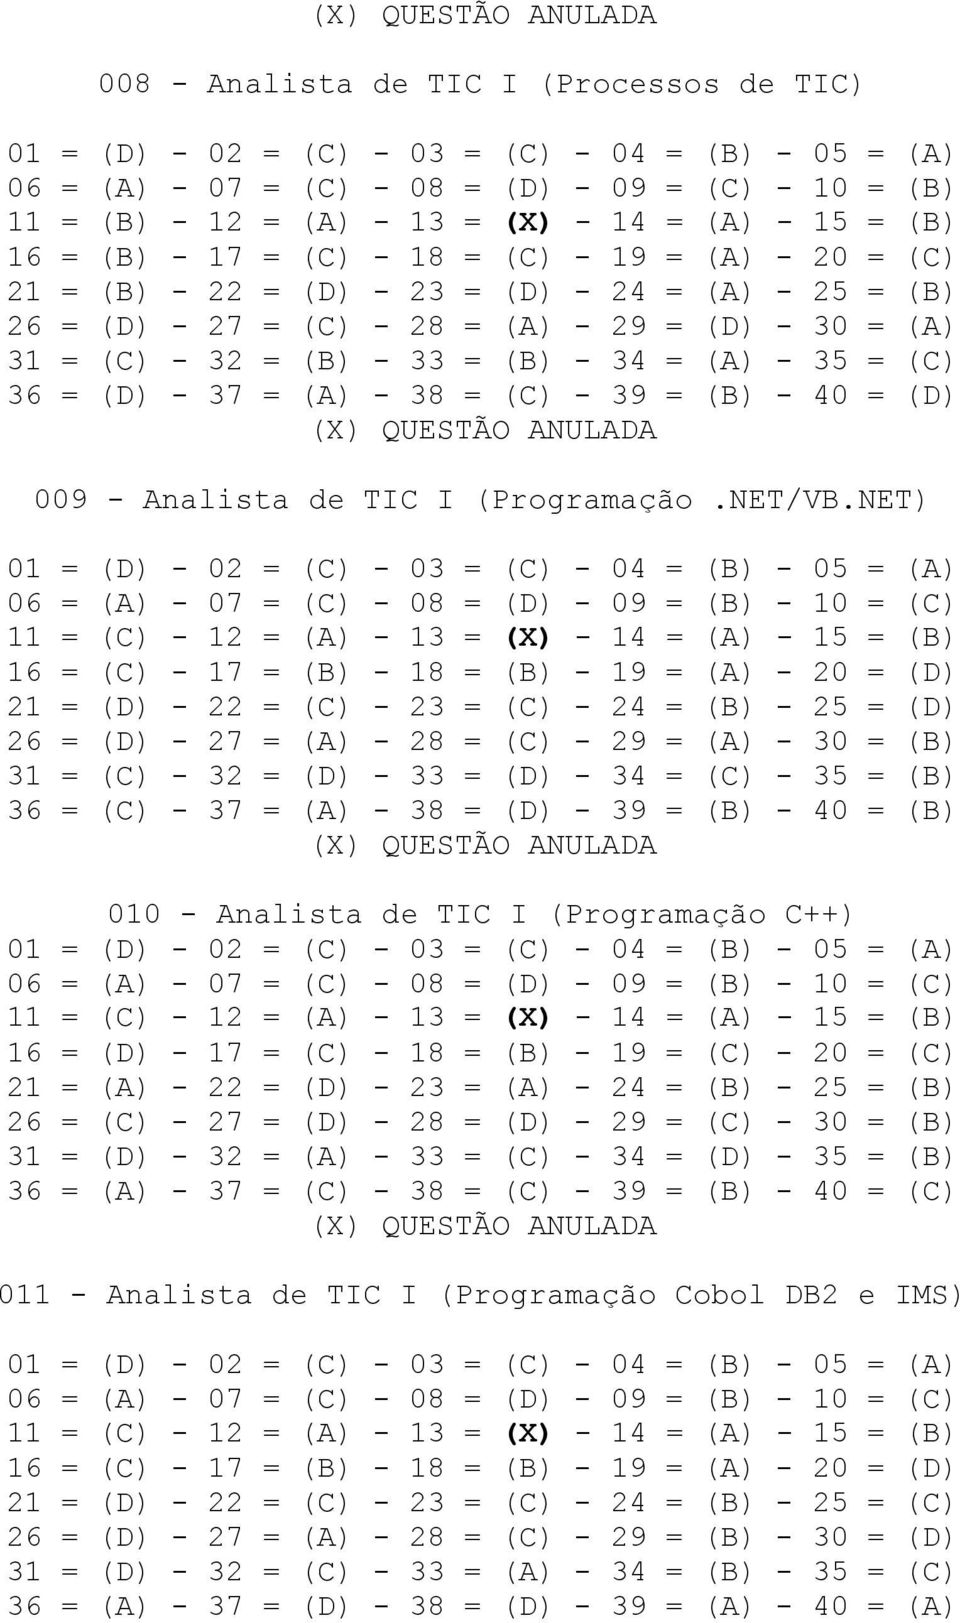 NET) 16 = (C) - 17 = (B) - 18 = (B) - 19 = (A) - 20 = (D) 21 = (D) - 22 = (C) - 23 = (C) - 24 = (B) - 25 = (D) 26 = (D) - 27 = (A) - 28 = (C) - 29 = (A) - 30 = (B) 31 = (C) - 32 = (D) - 33 = (D) - 34